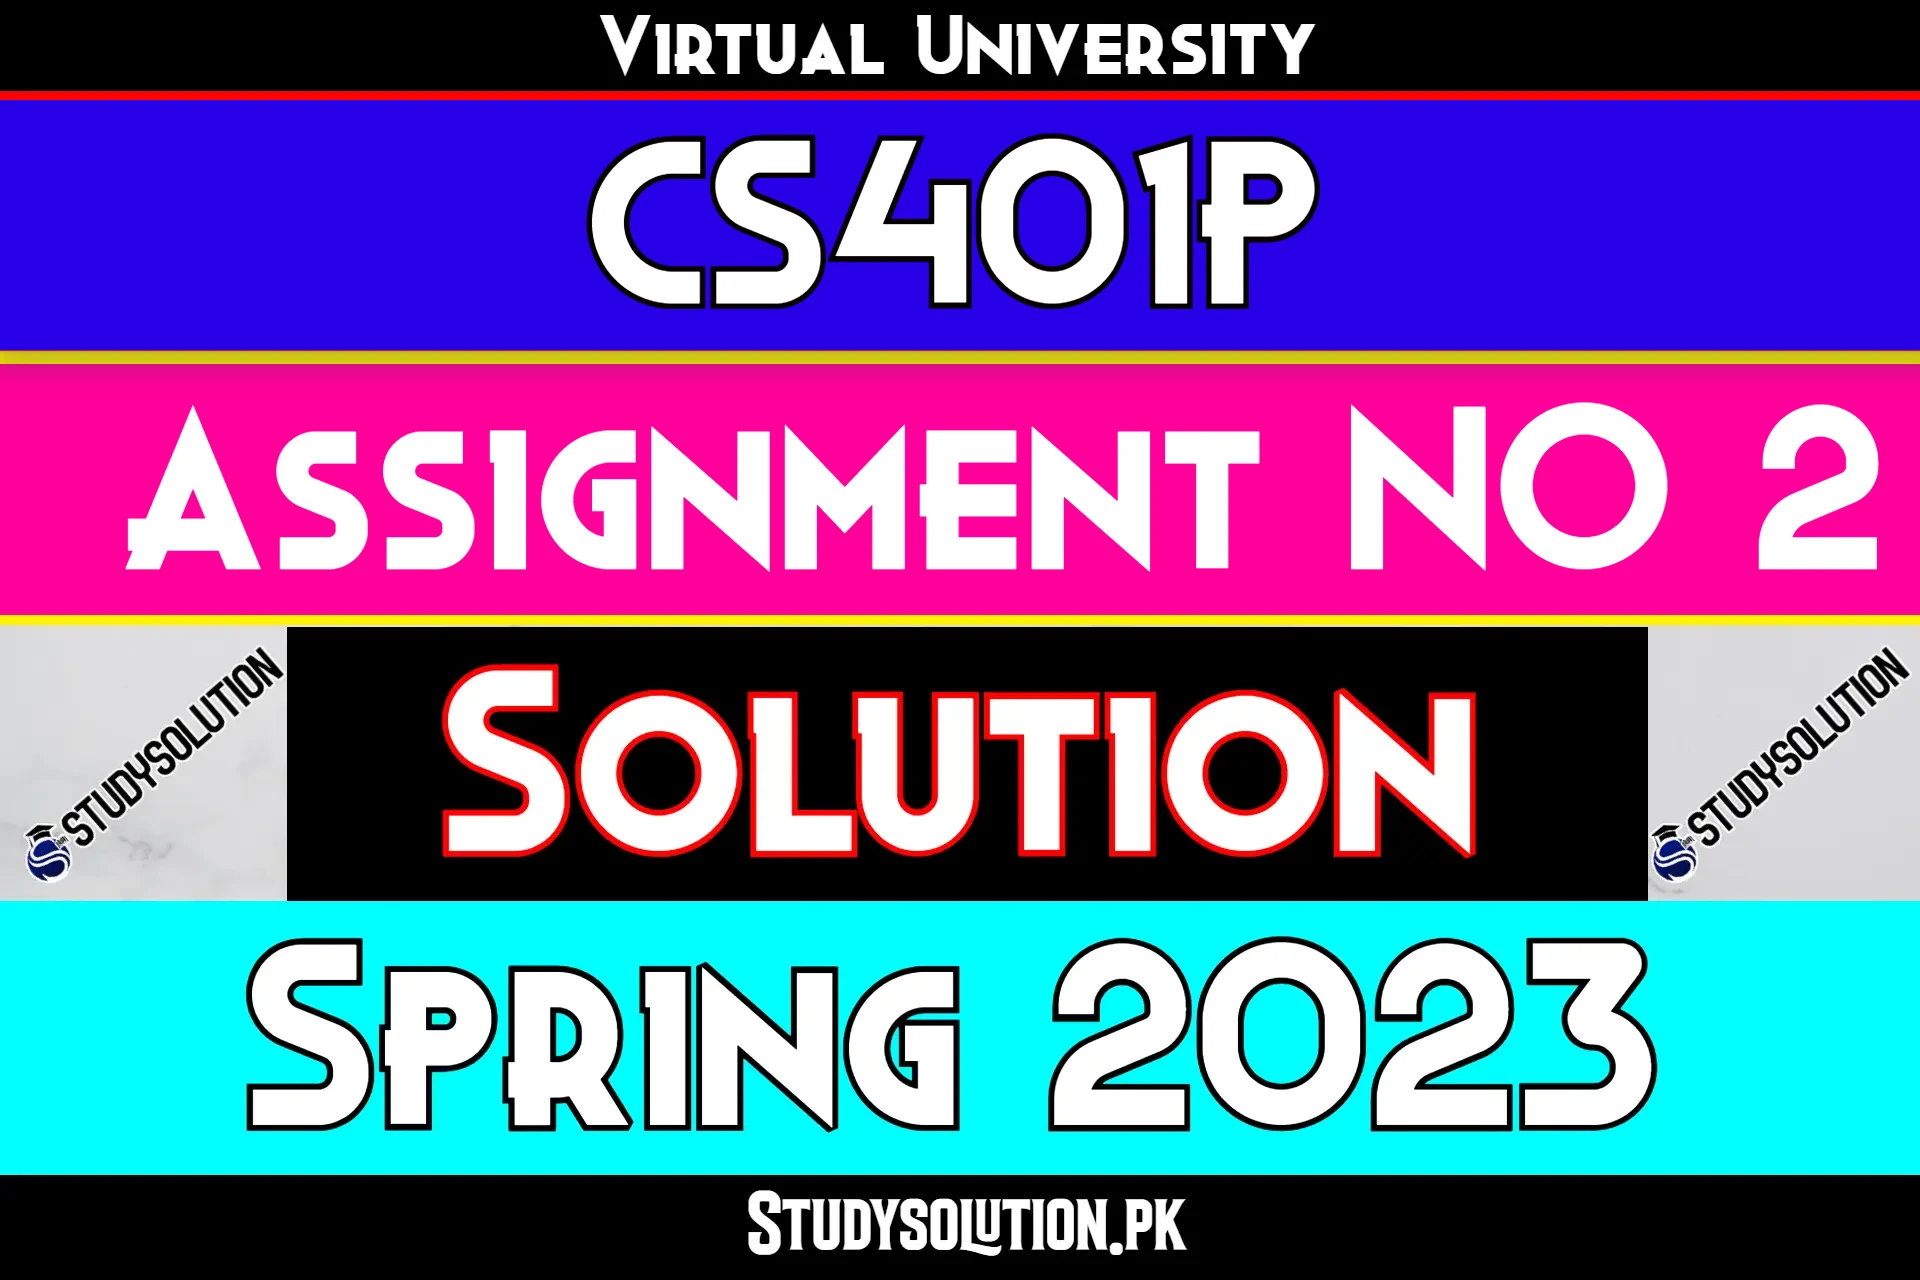 CS401P Assignment No 2 Solution Spring 2023